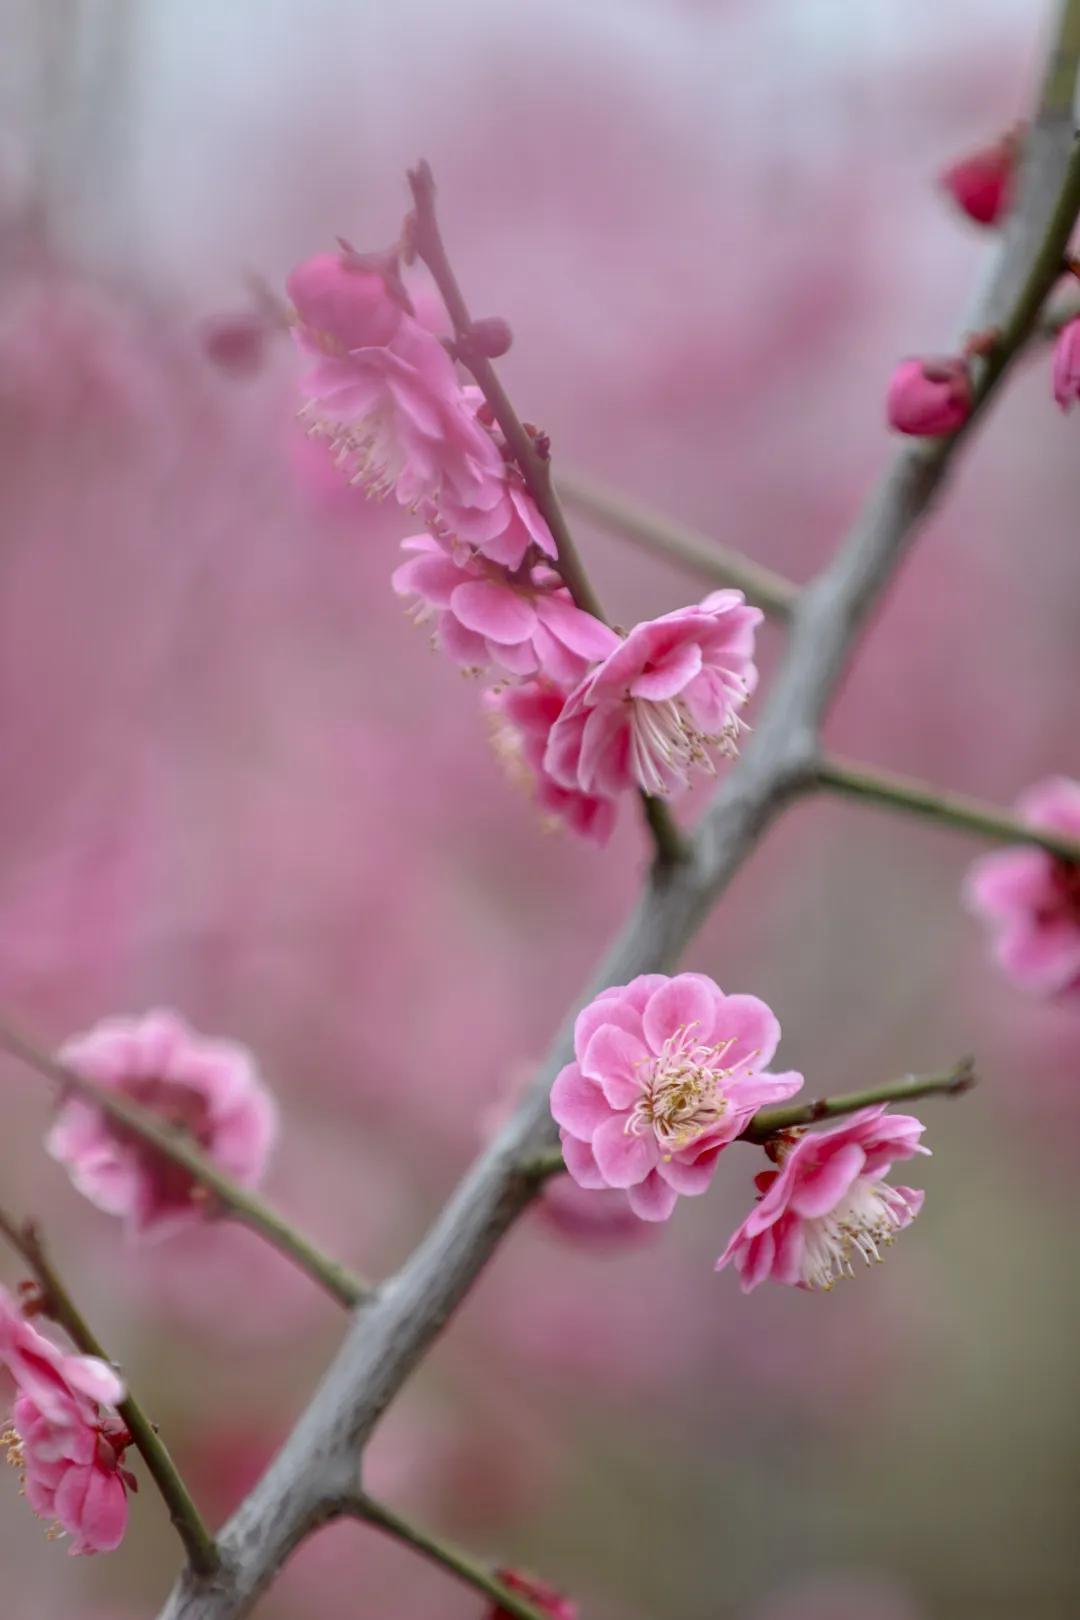 在风中起舞婀娜美妙 可闻到迎春花的清雅香味 可见到高傲挺拔的梅花枝